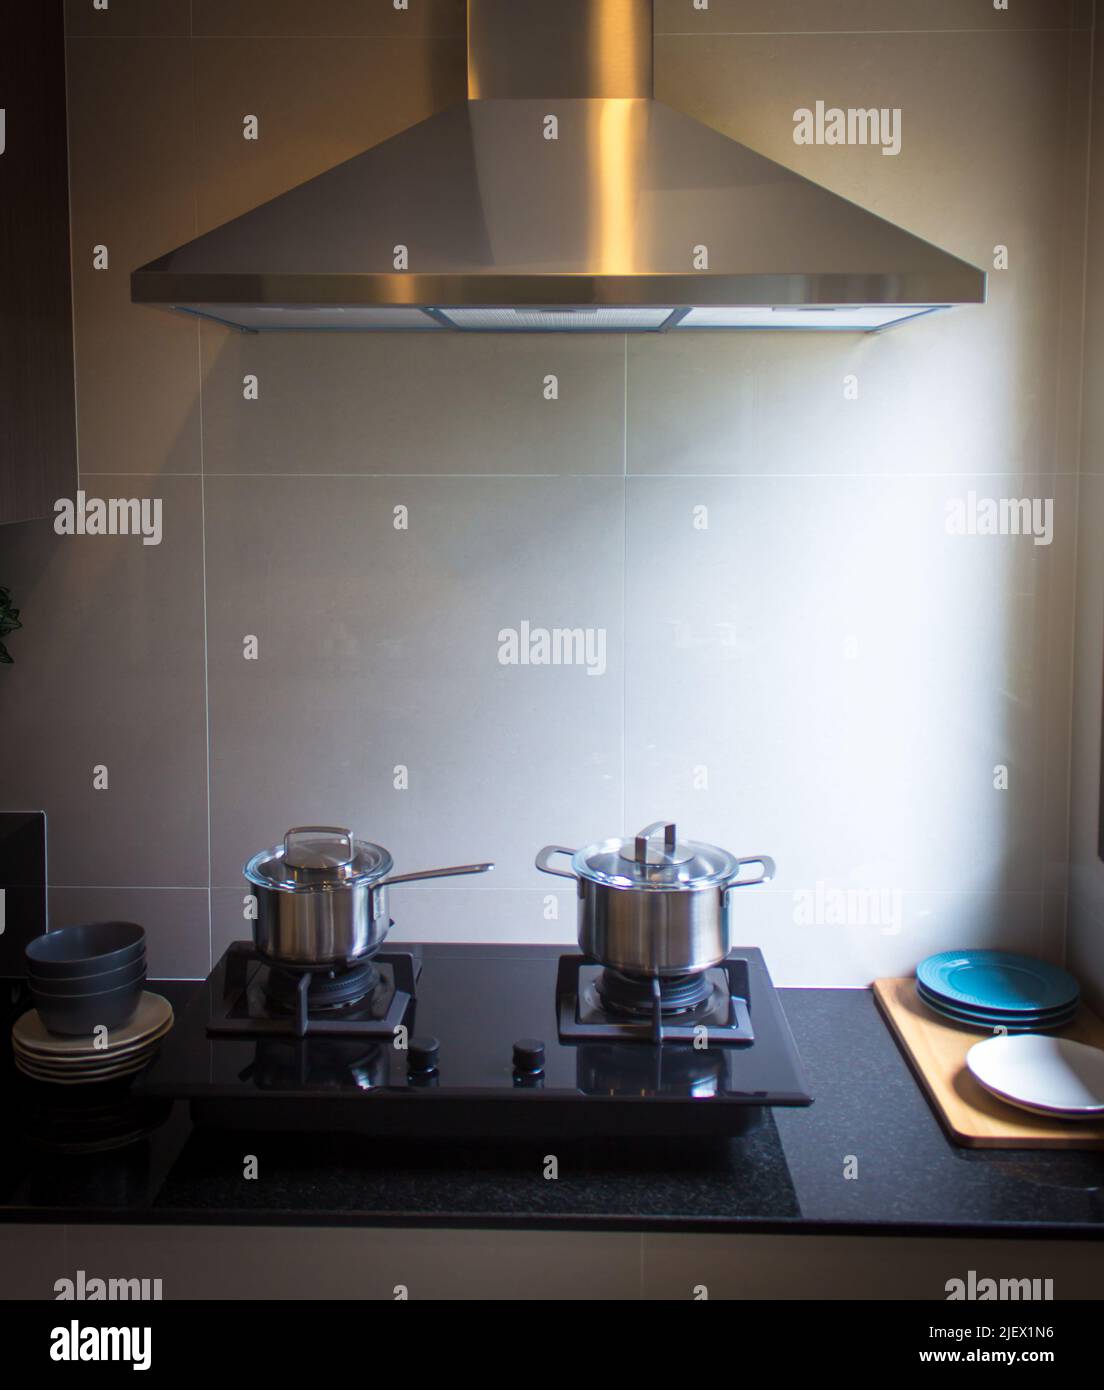 Edelstahl-Kochtopf auf einem schwarzen Gasherd in einer Küche Stockfoto